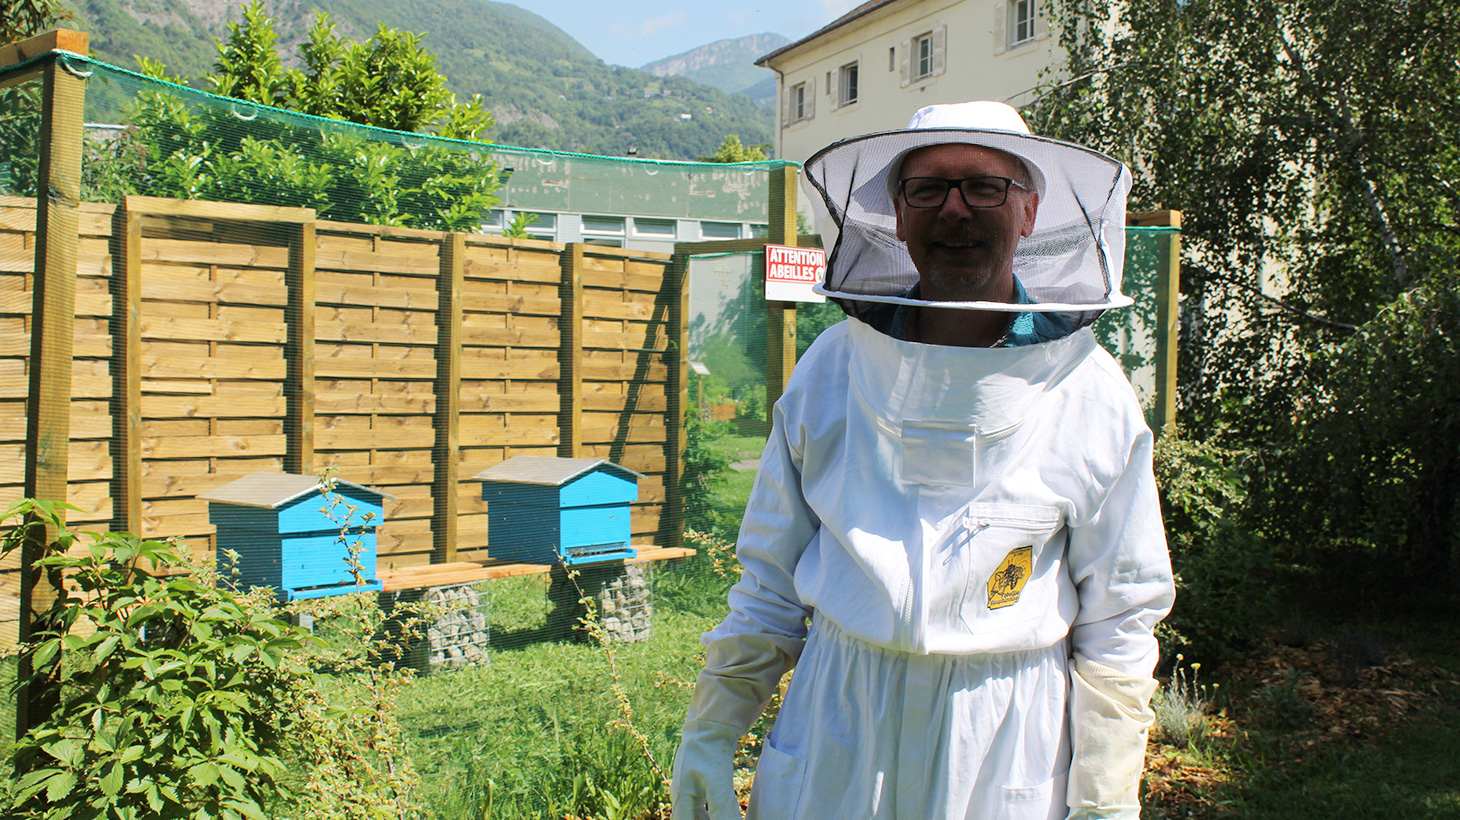 La tenue d’apiculteur est de rigueur pour intervenir dans le rucher